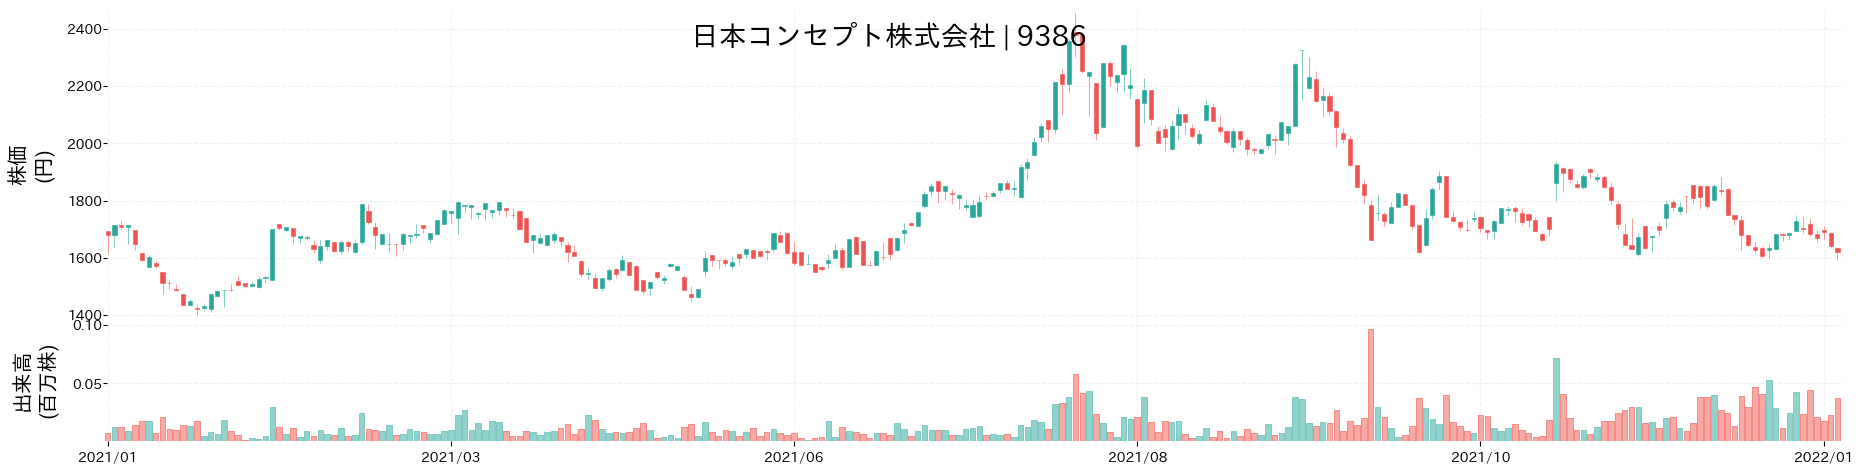 日本コンセプトの株価推移(2021)